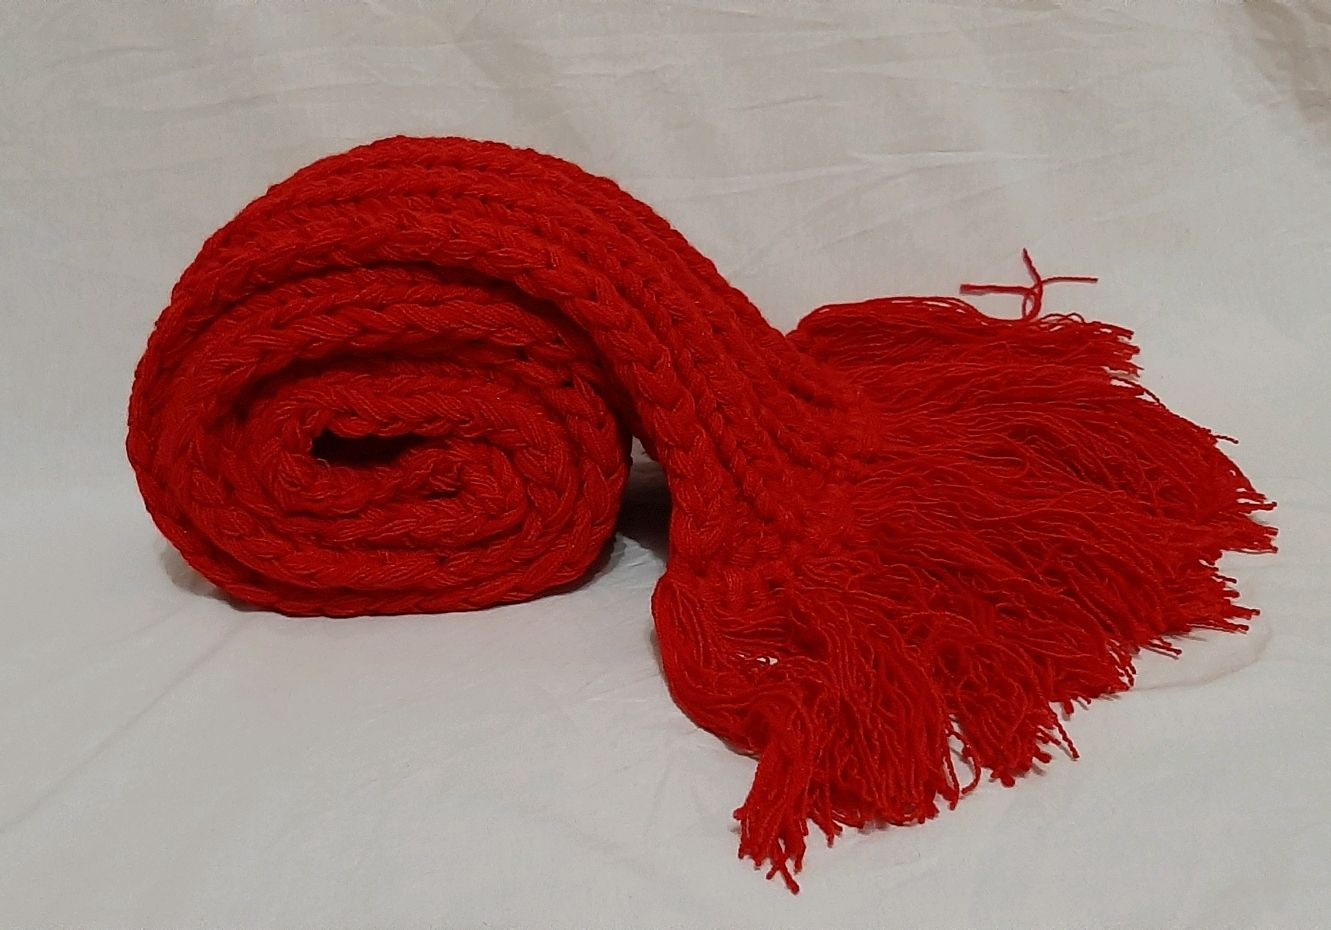 Красный вязаный шарф